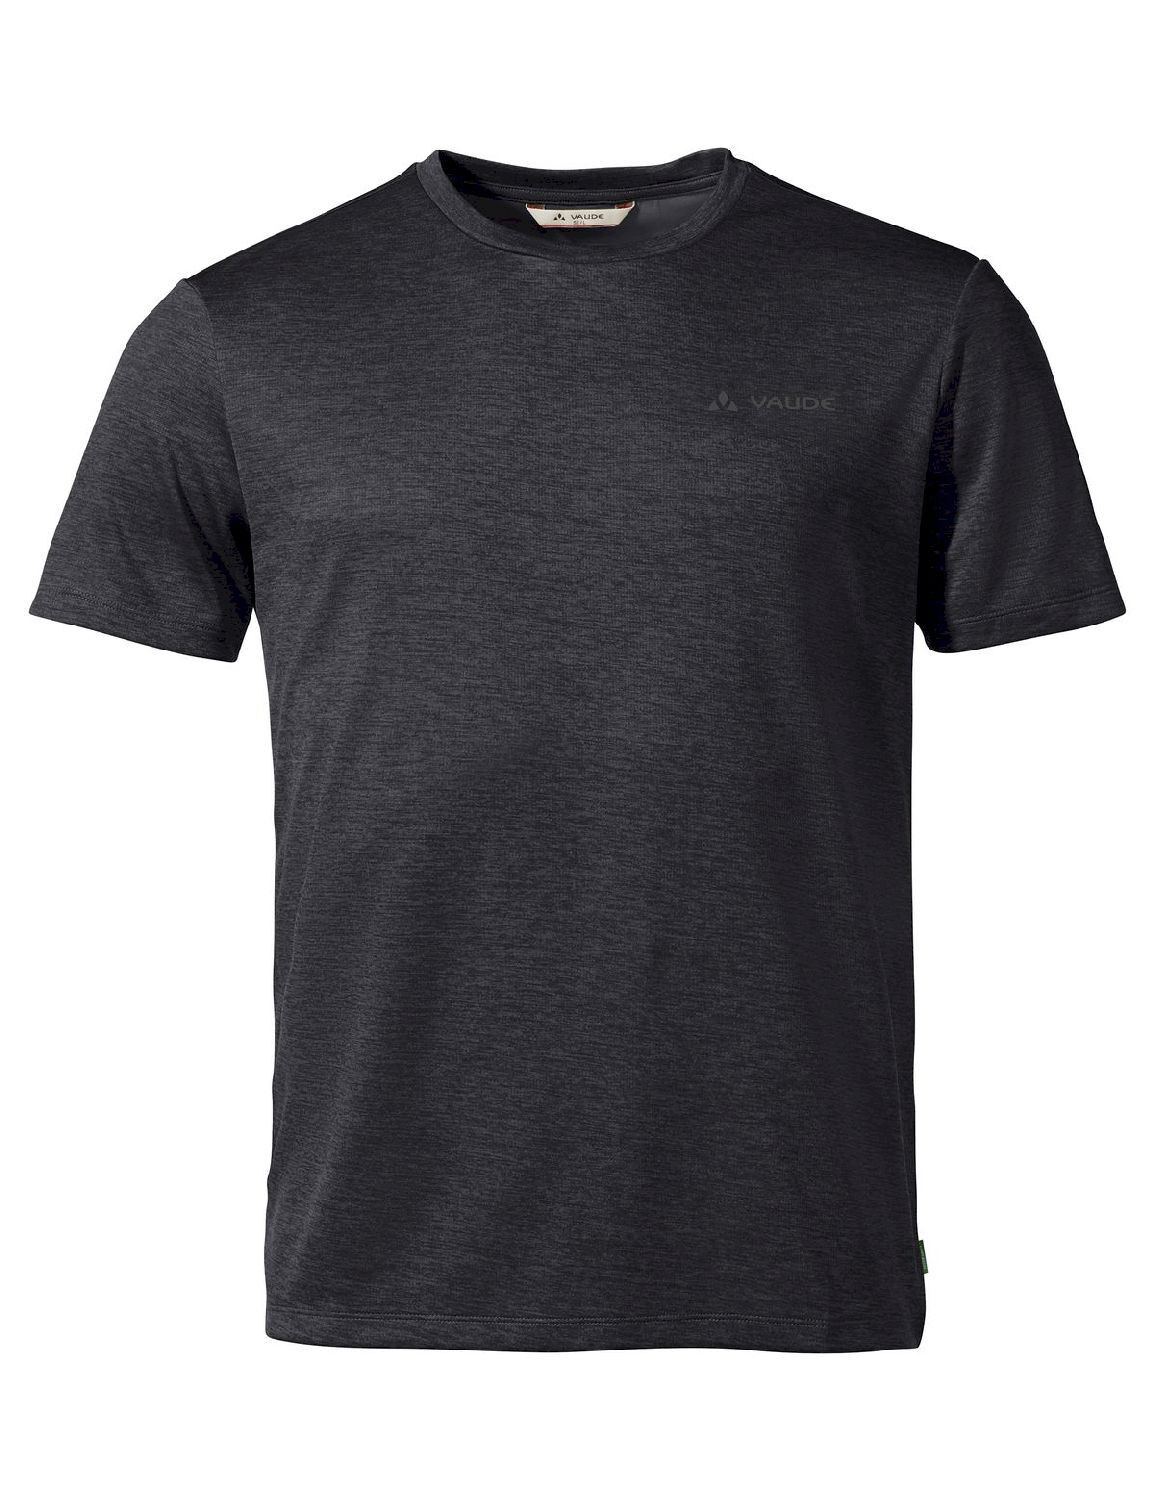 Vaude Essential T-Shirt - T-shirt - Men's